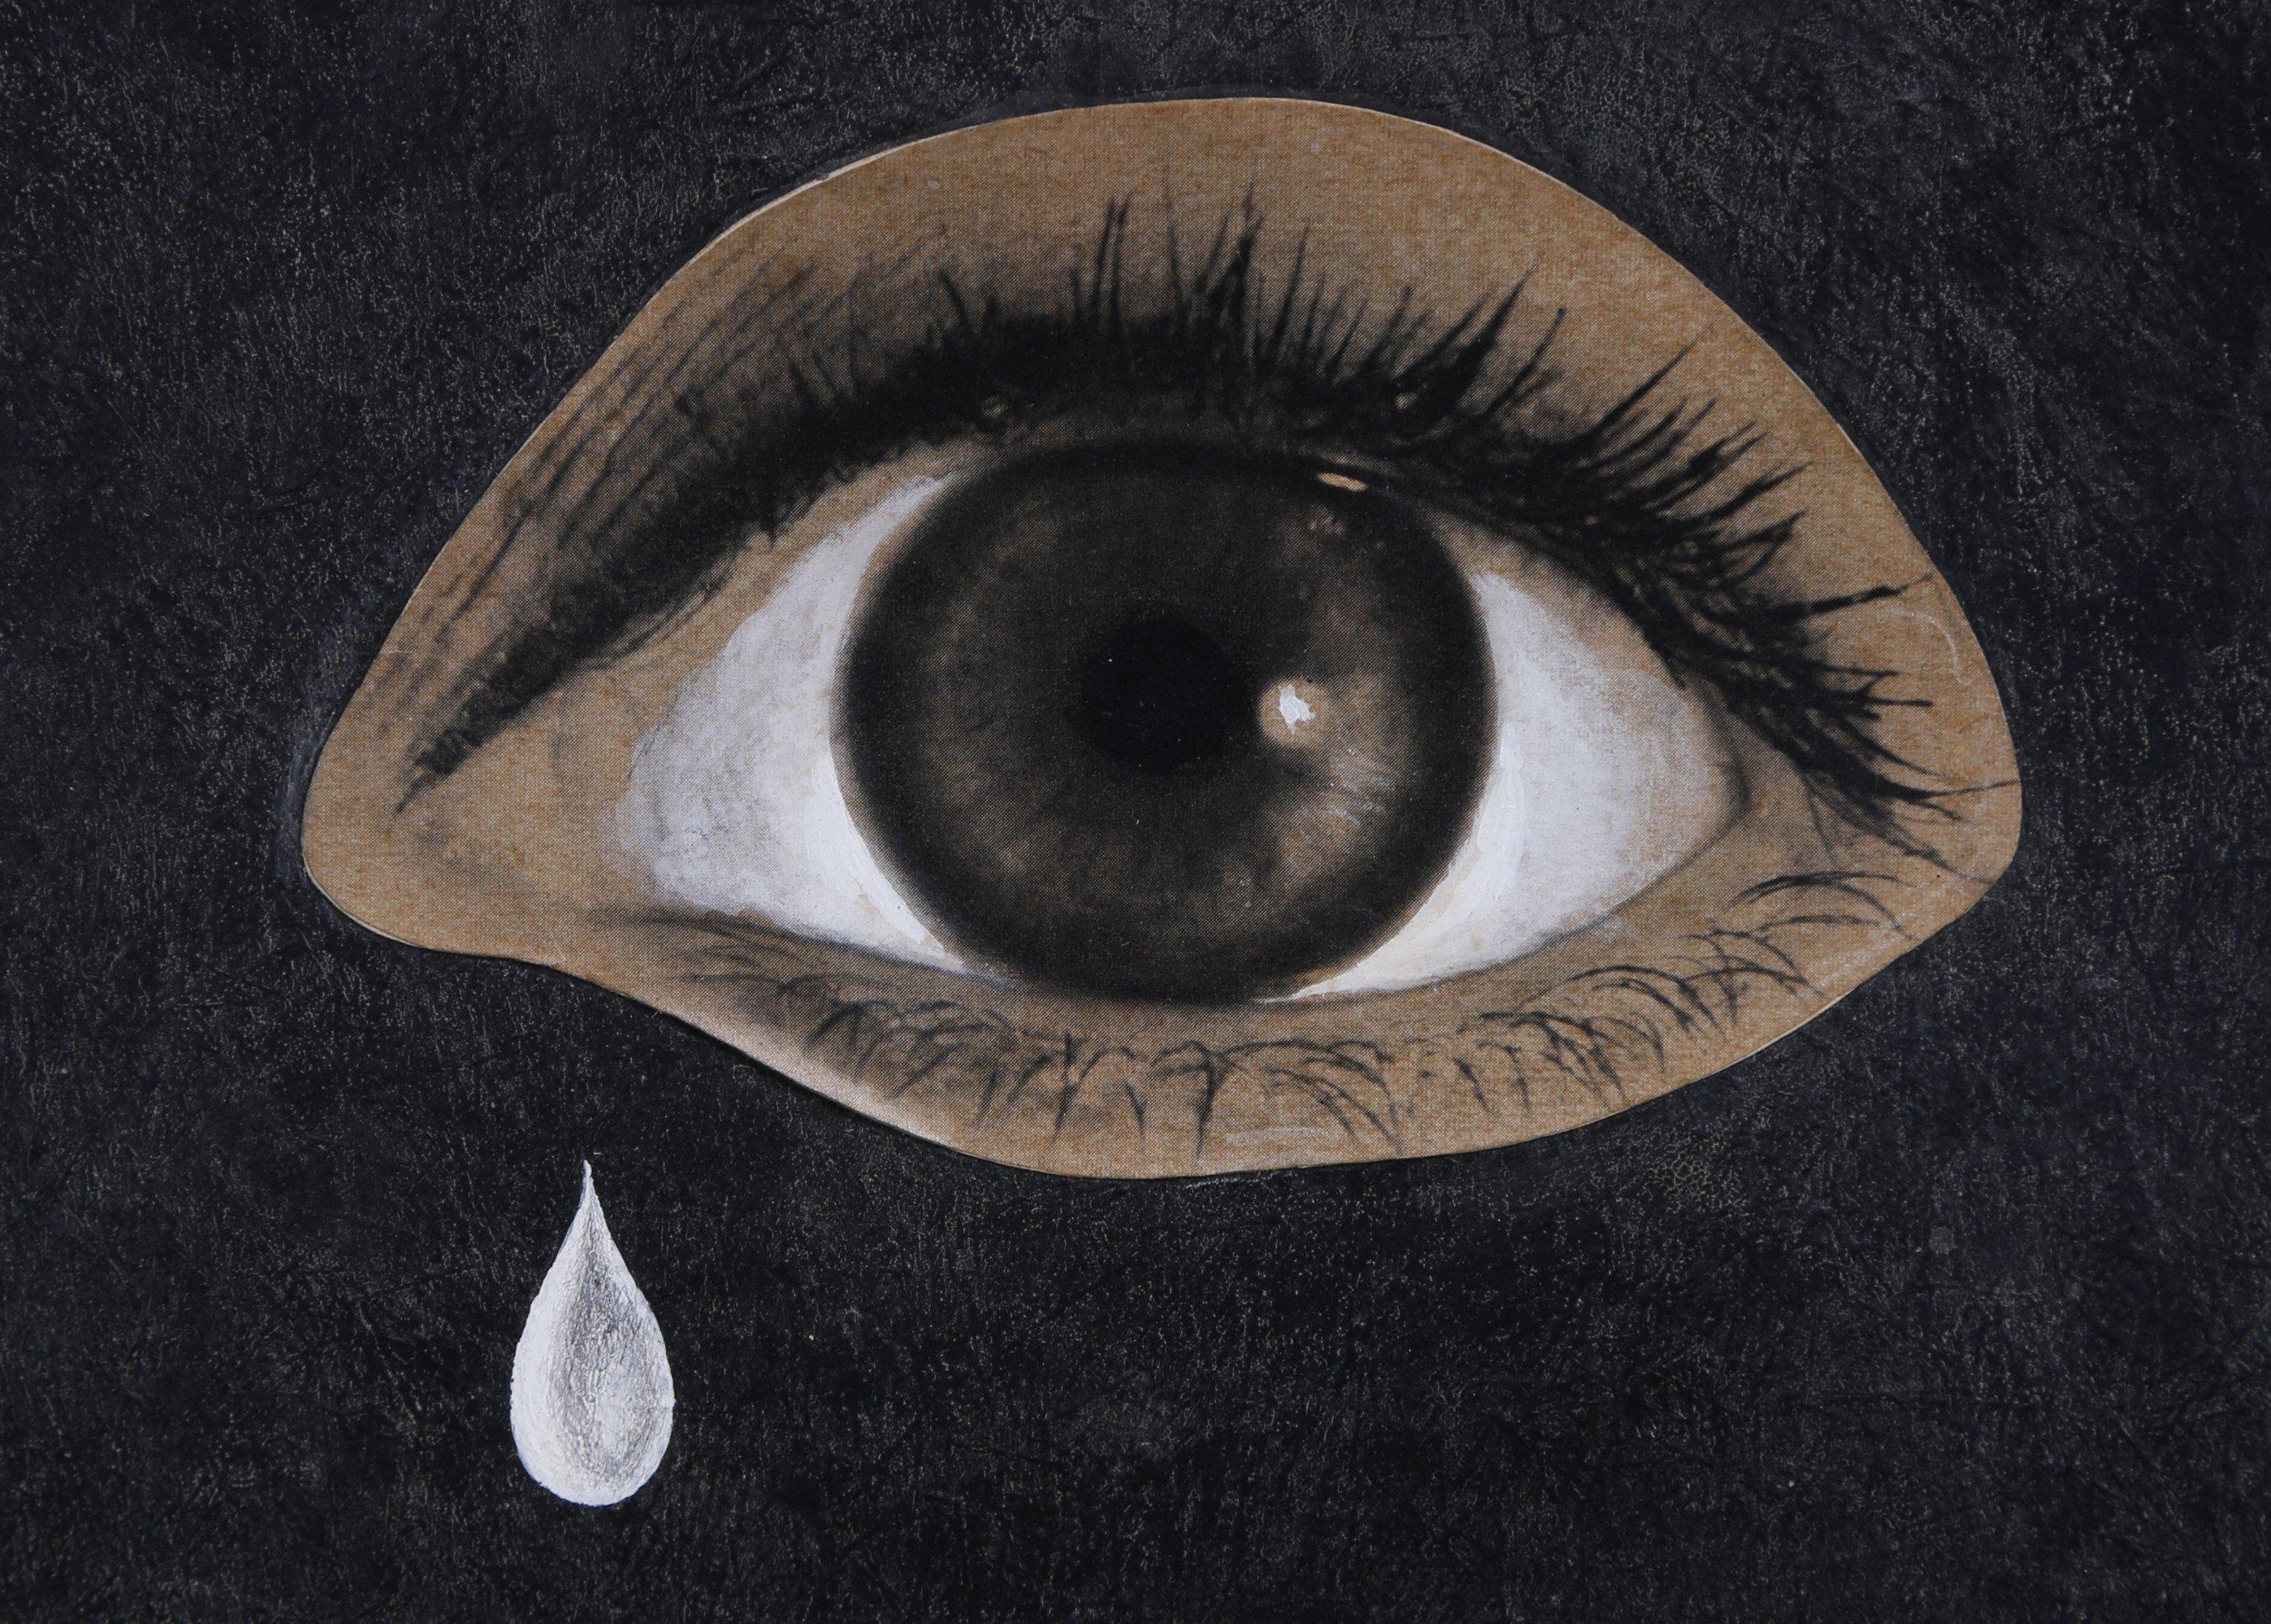 Das Auge der Wste, figurale abstrakte Collage, surrealistisches Gemlde in Schwarz und Braun (Amerikanische Moderne), Mixed Media Art, von Clarence Holbrook Carter